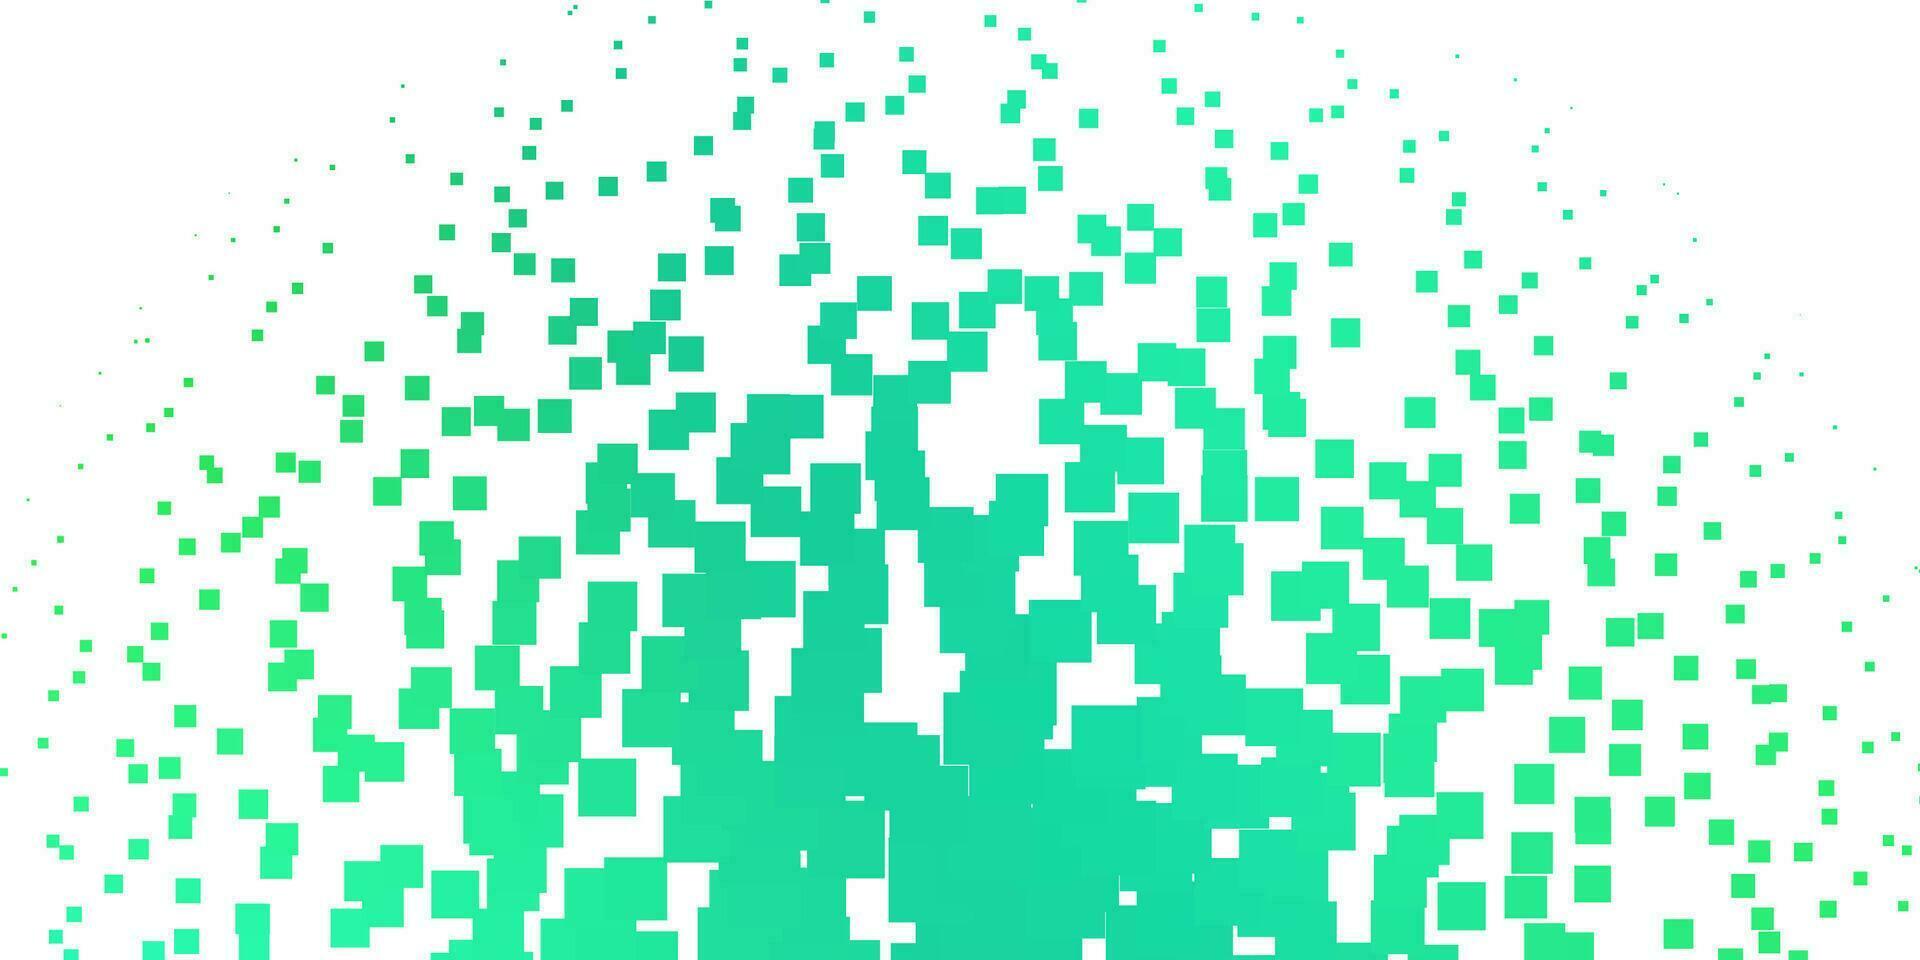 disposition de vecteur vert clair avec des lignes, des rectangles.